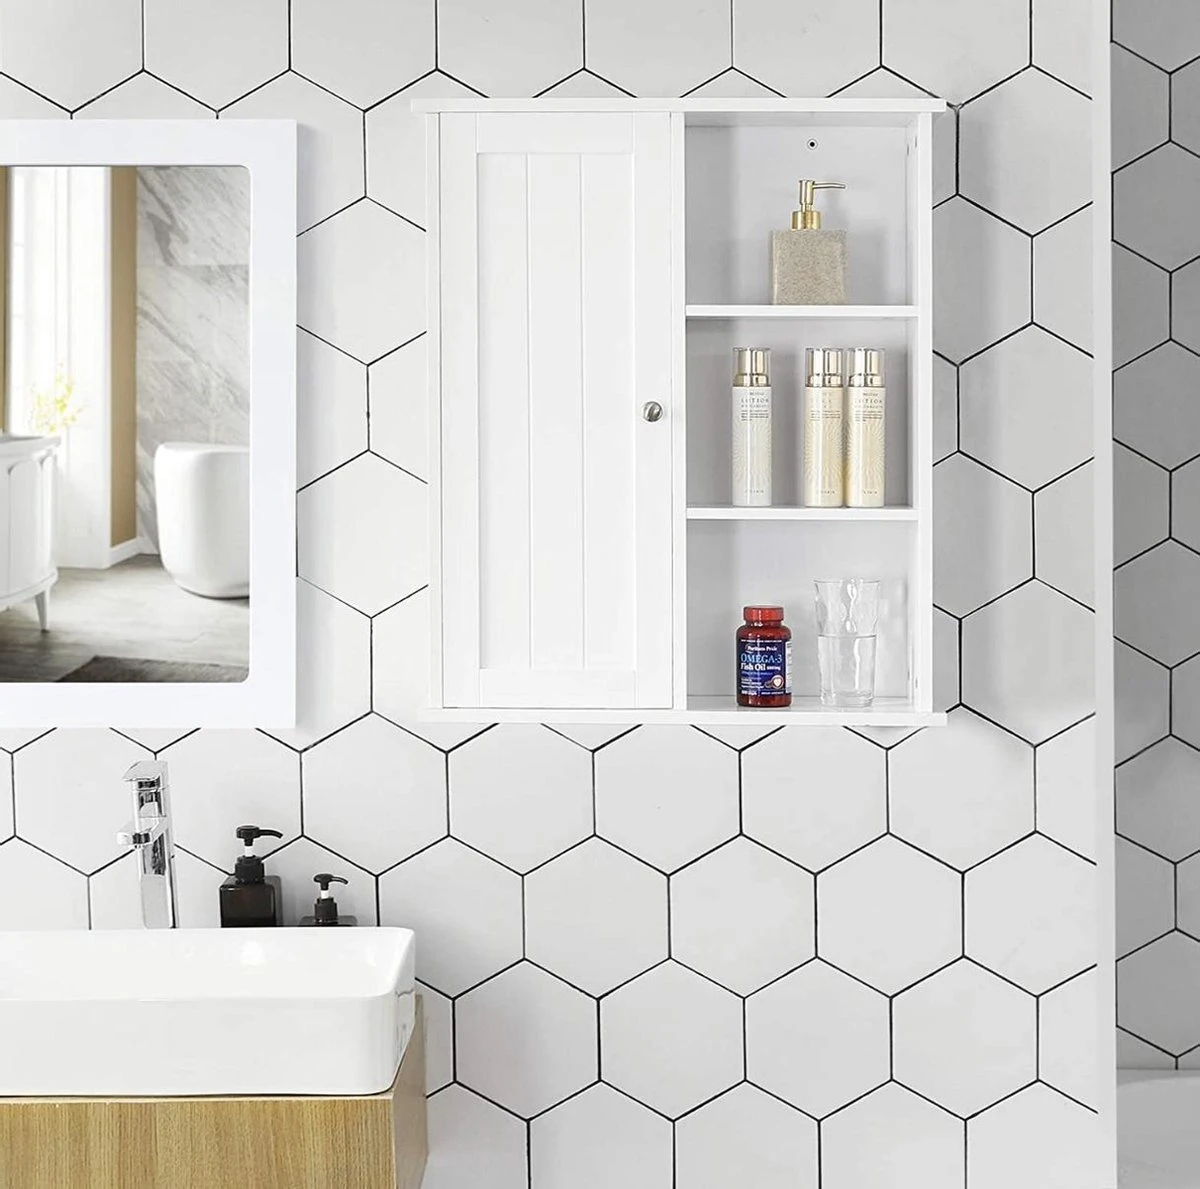 ZAZA Home kast wandkast wandkast badkamerkast keukenkast plank opslag met deur en plank wit x 71 x 18 cm (B x H x D) BBC20WT - SimpleDeal.nl